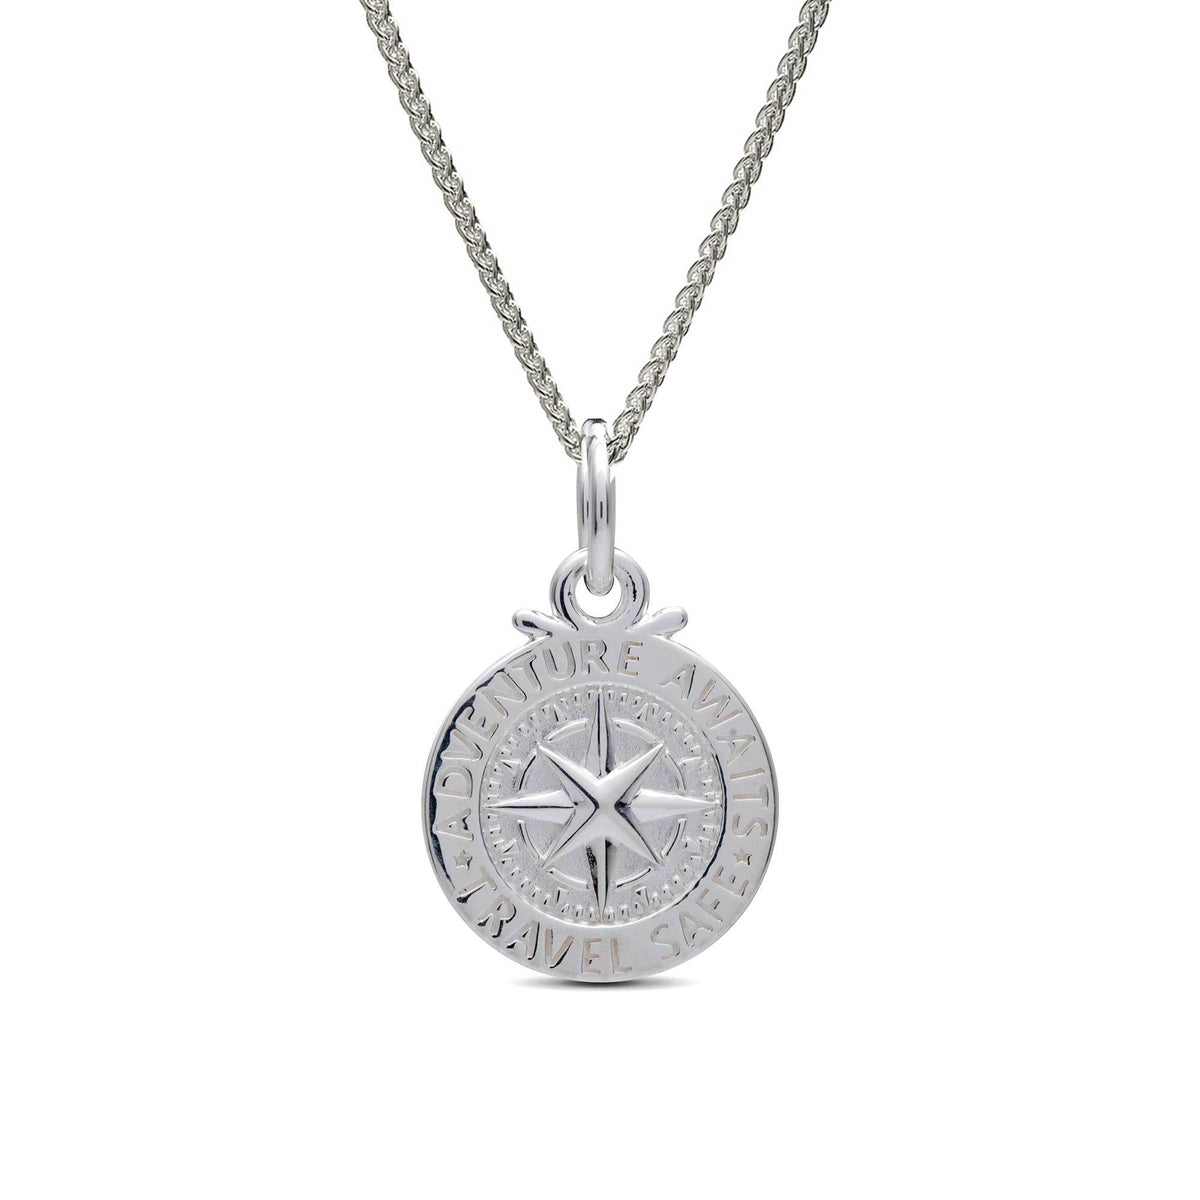 Silver compass saint christopher charm necklace pendant womans travel gift idea